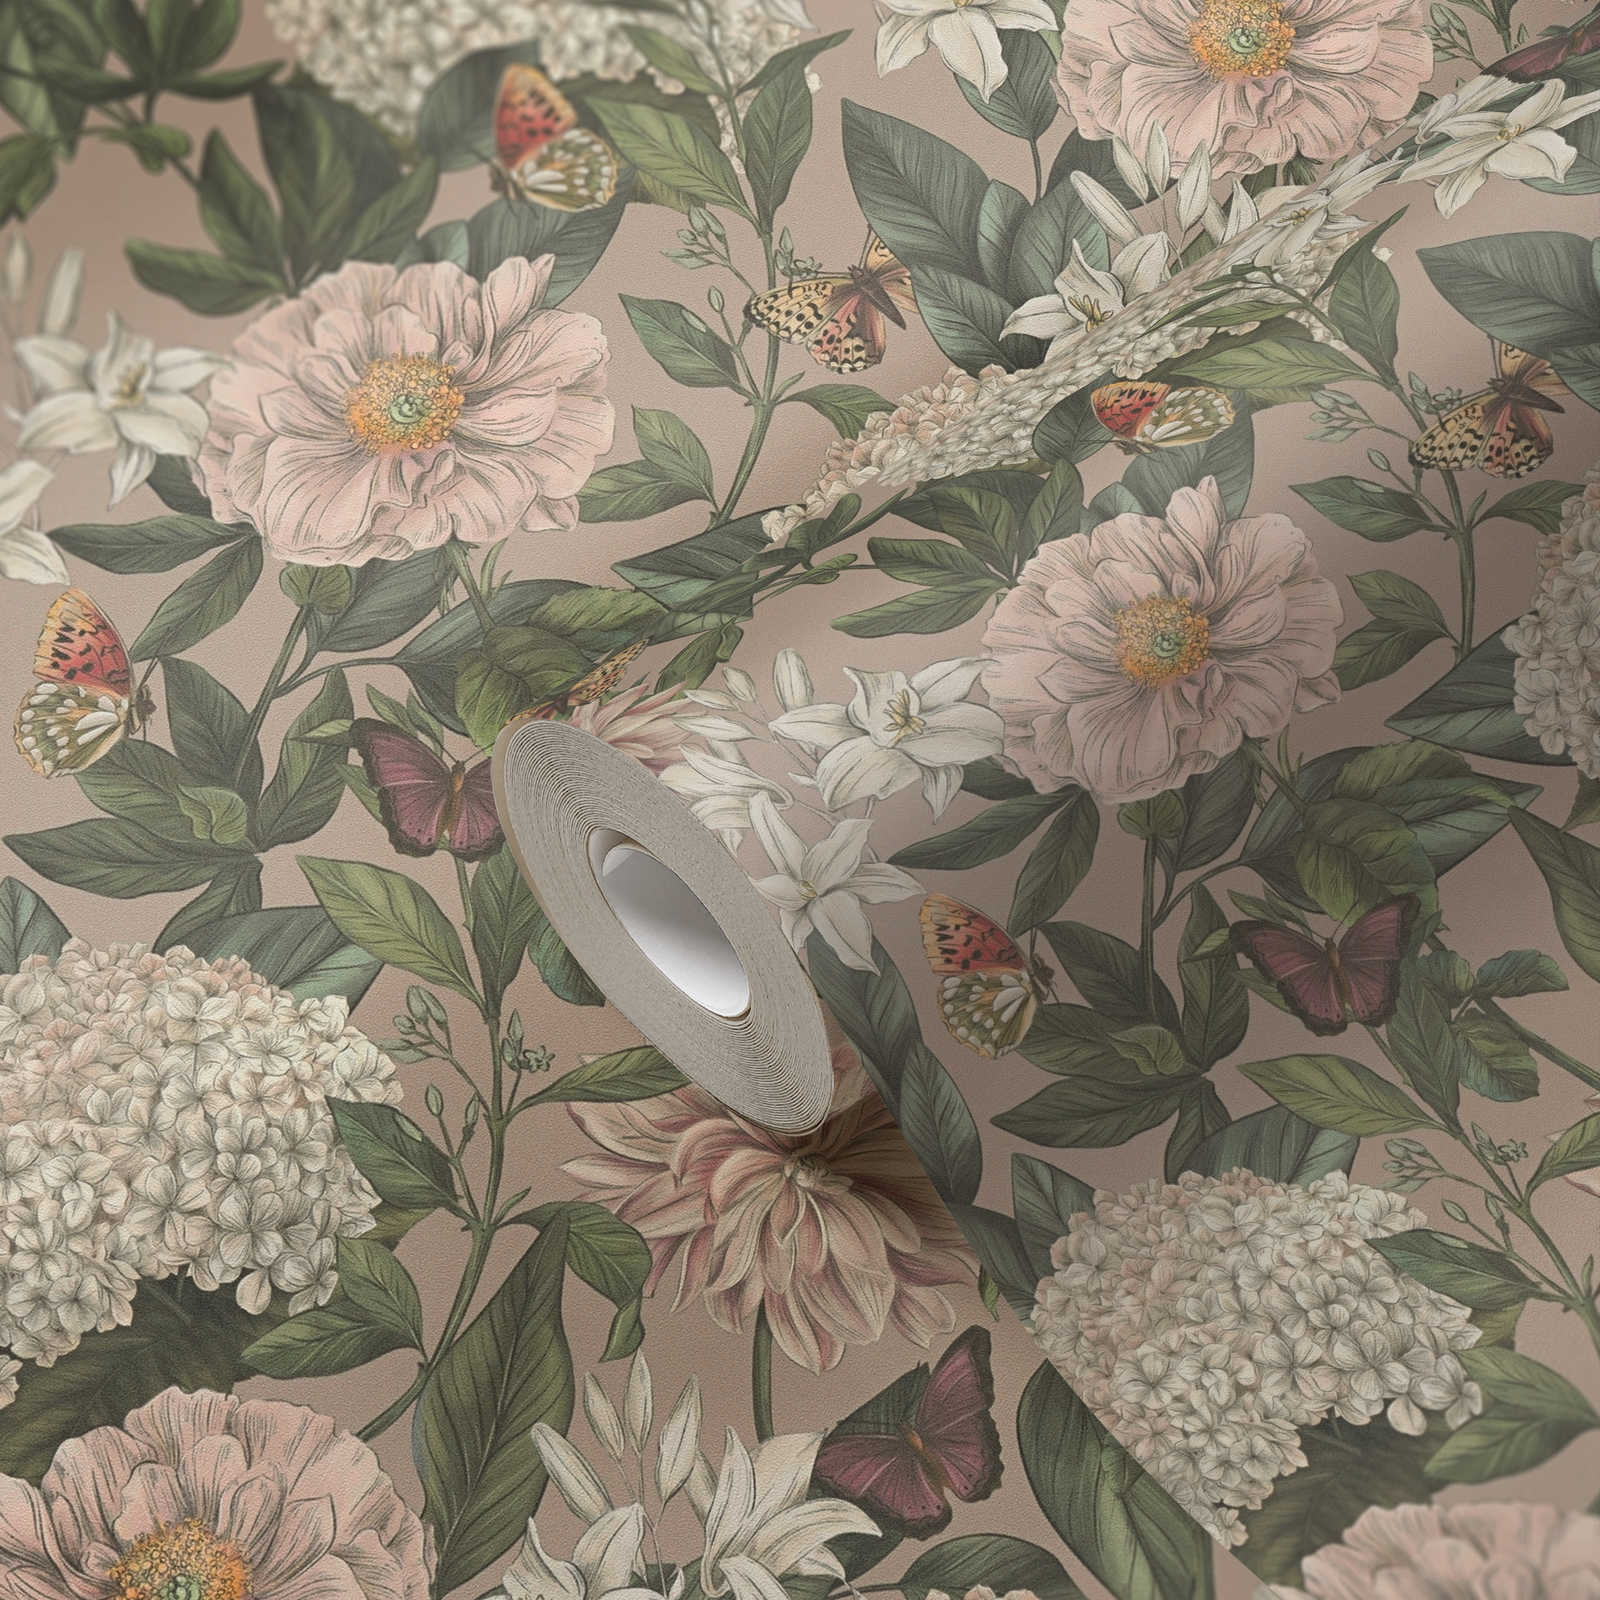             Florale Tapete modern mit Tieren & Blumen strukturiert matt – Rosa, Grün, Weiß
        